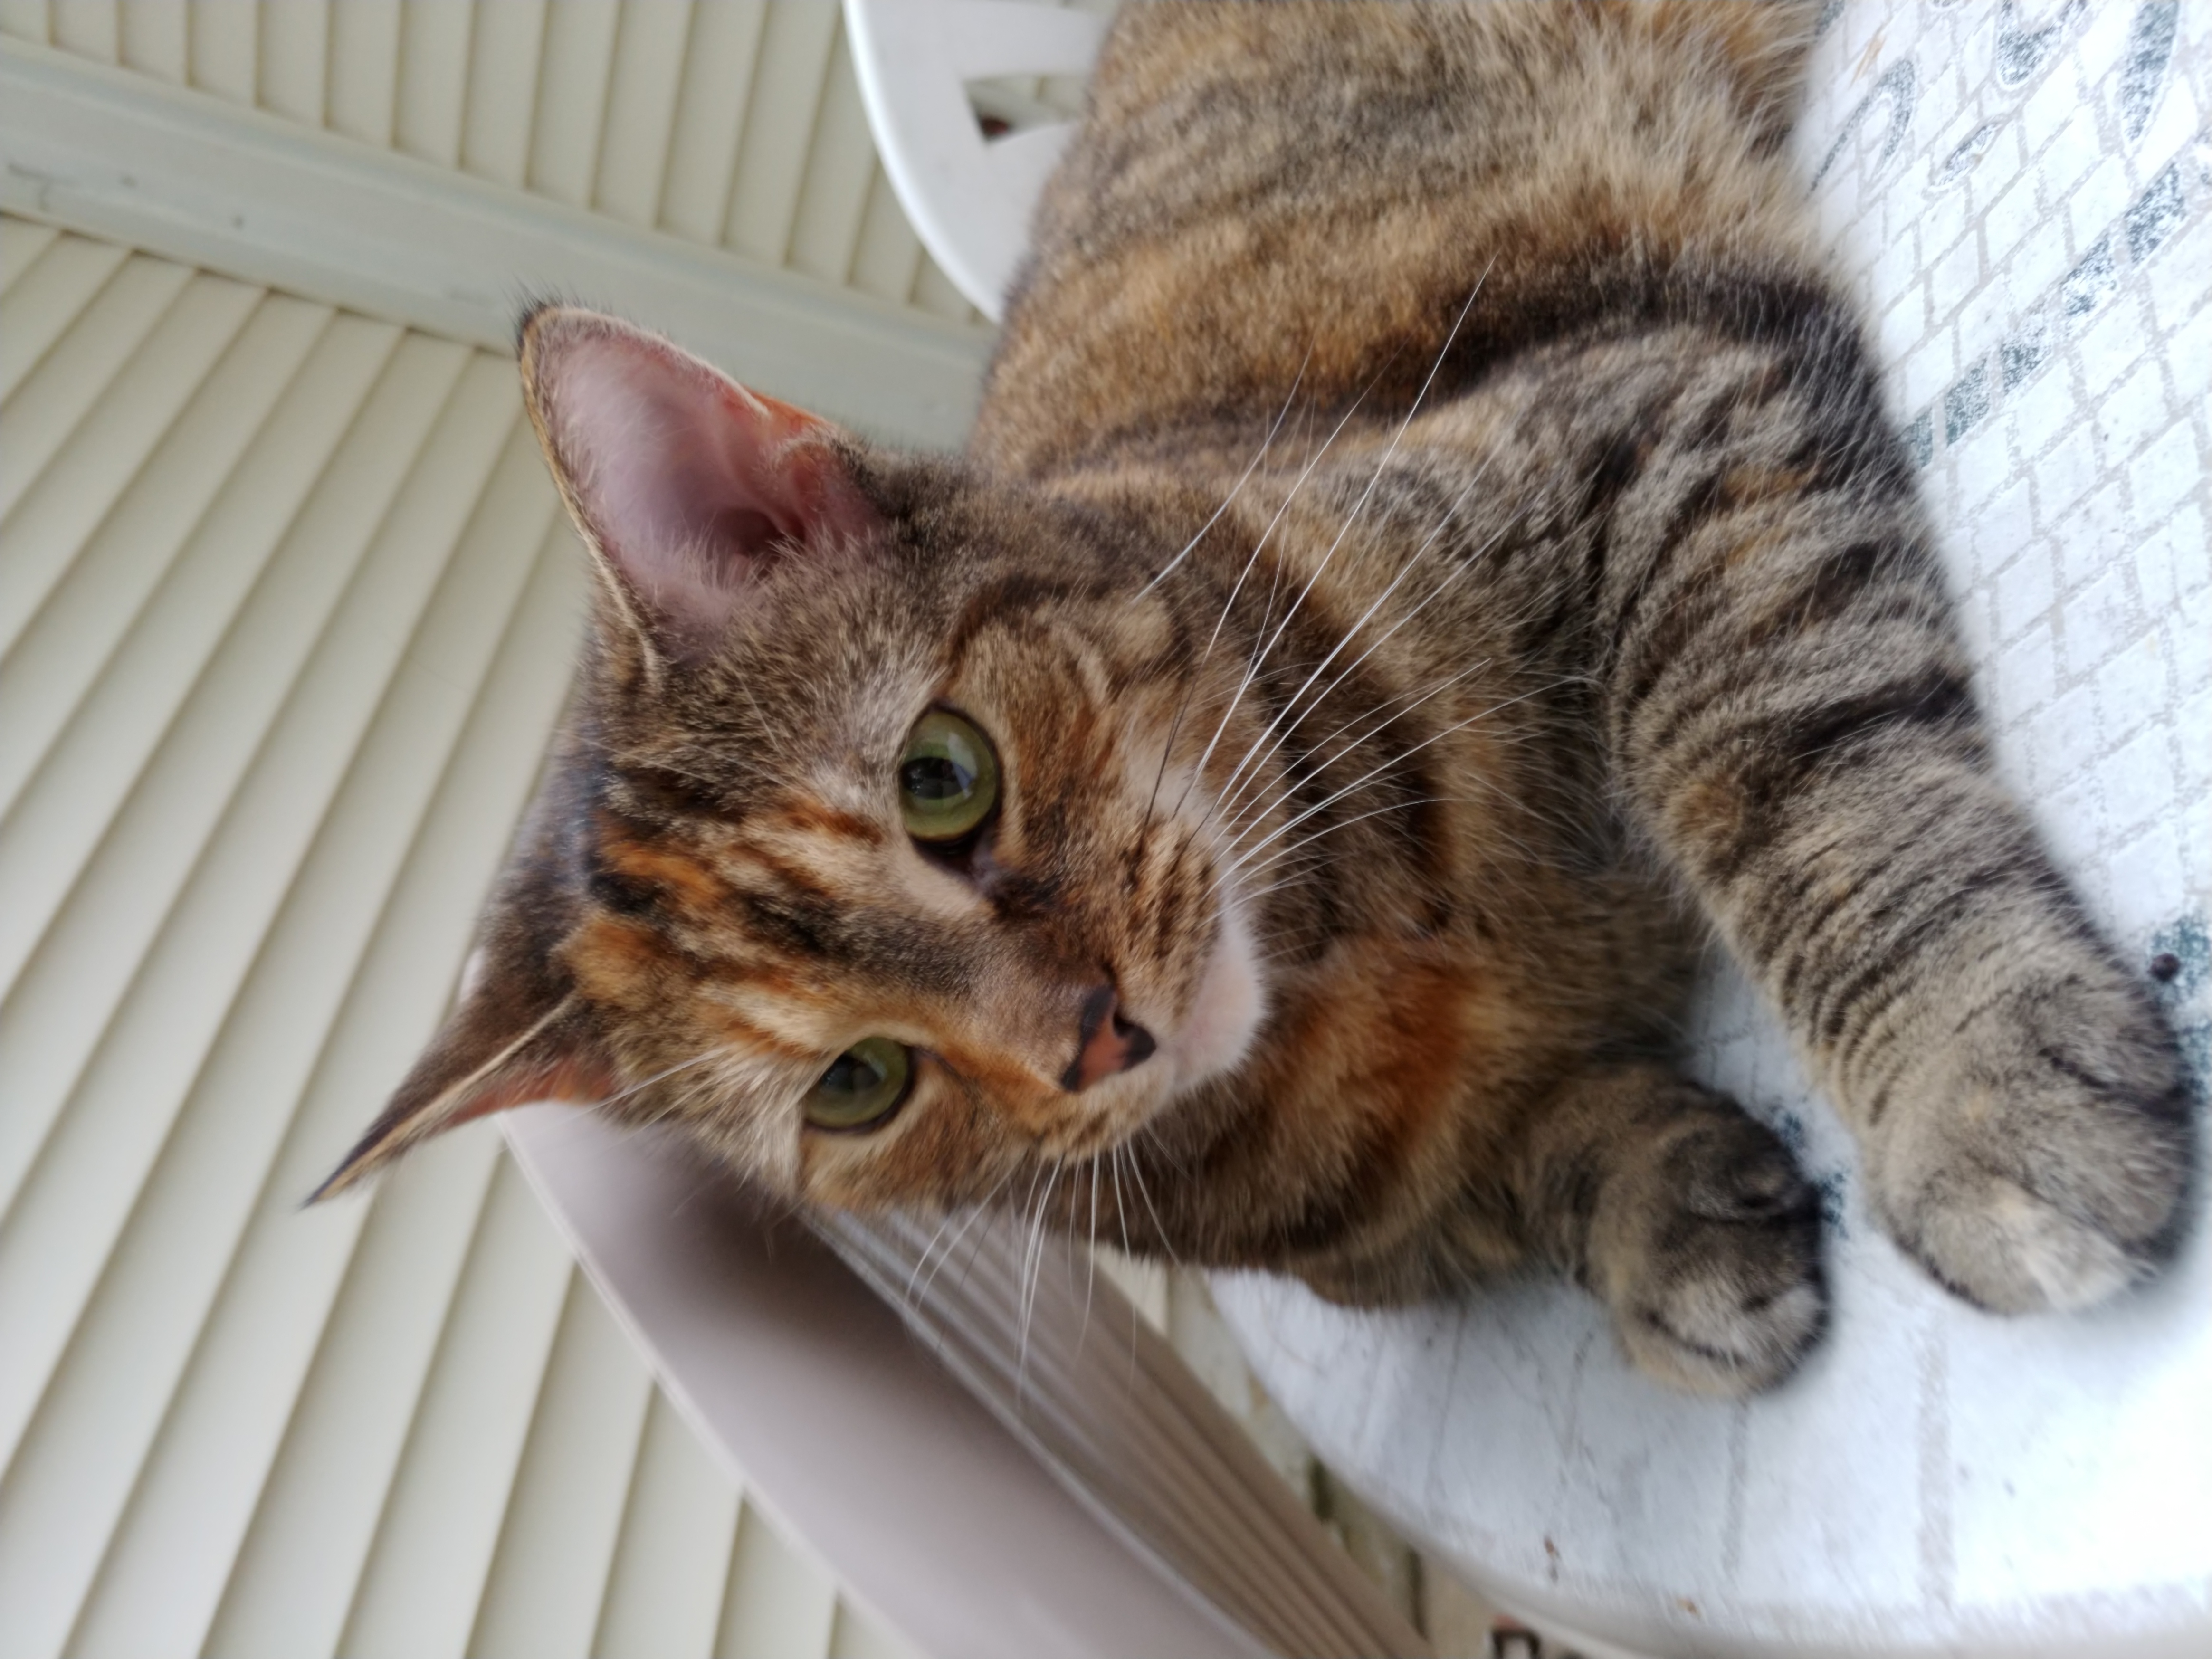 adoptable Cat in Sterling,VA named Miki